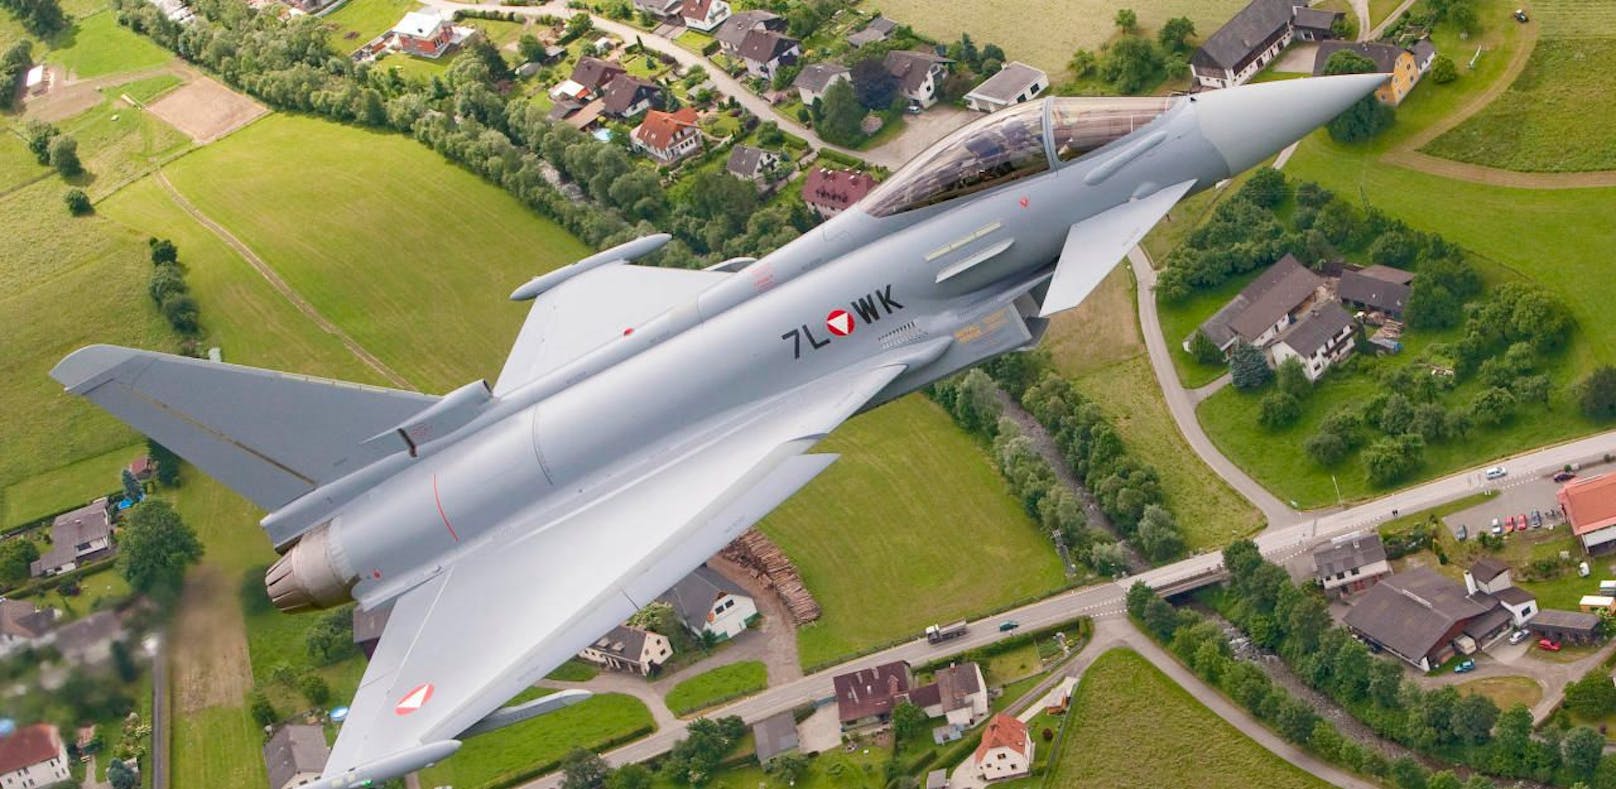 Neuordnung: Werden Eurofighter abgeschafft?